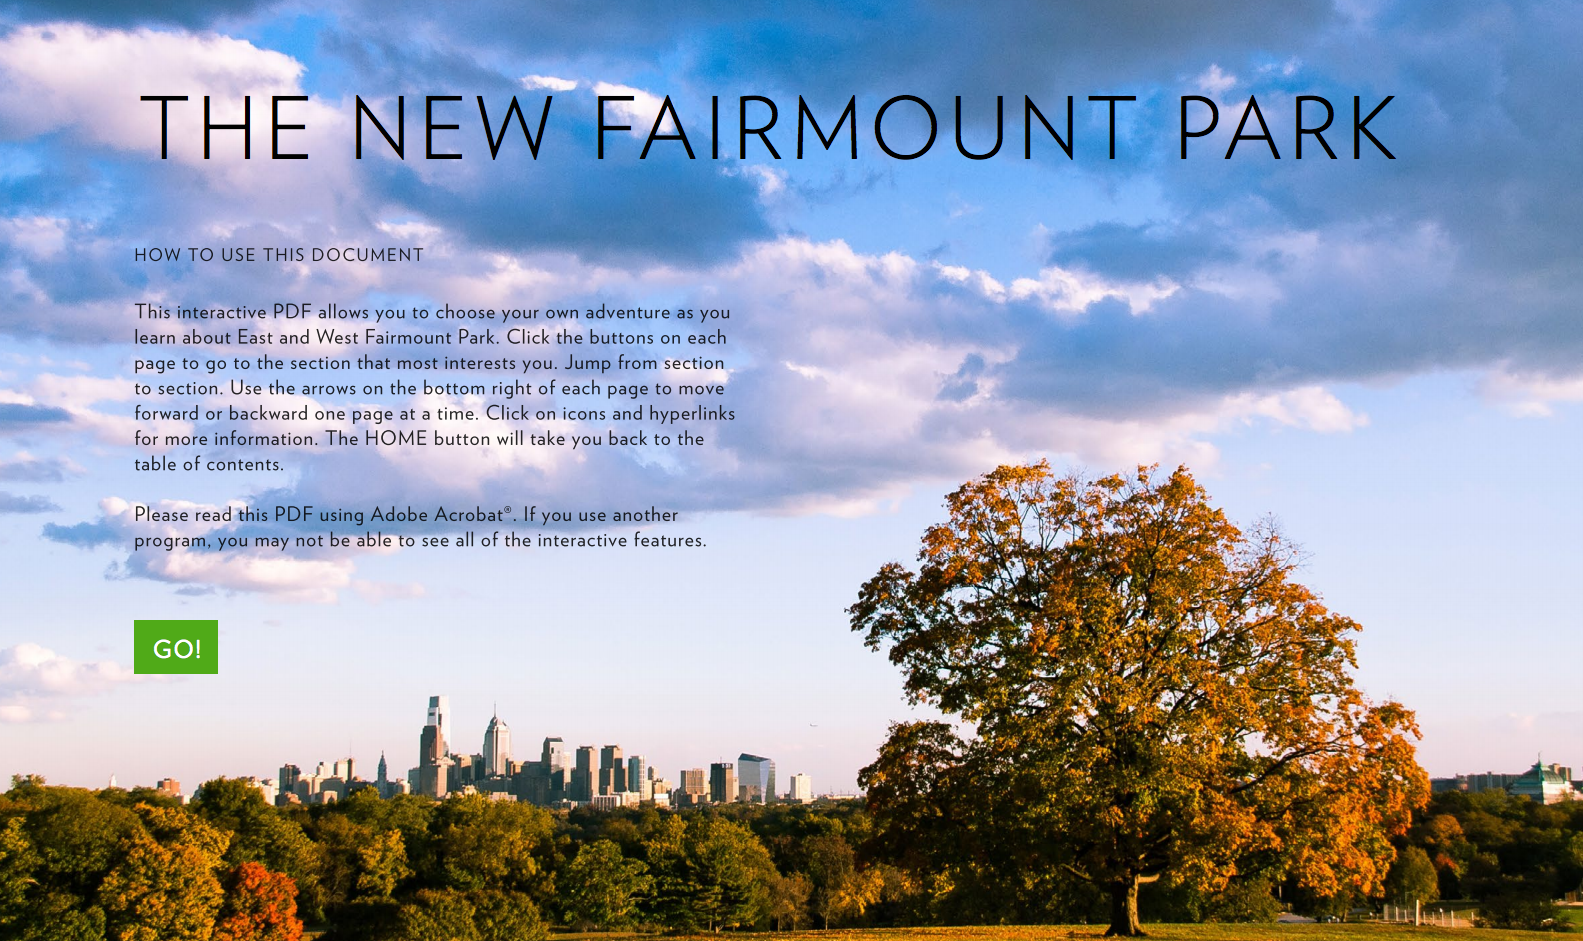 The New Fairmount Park